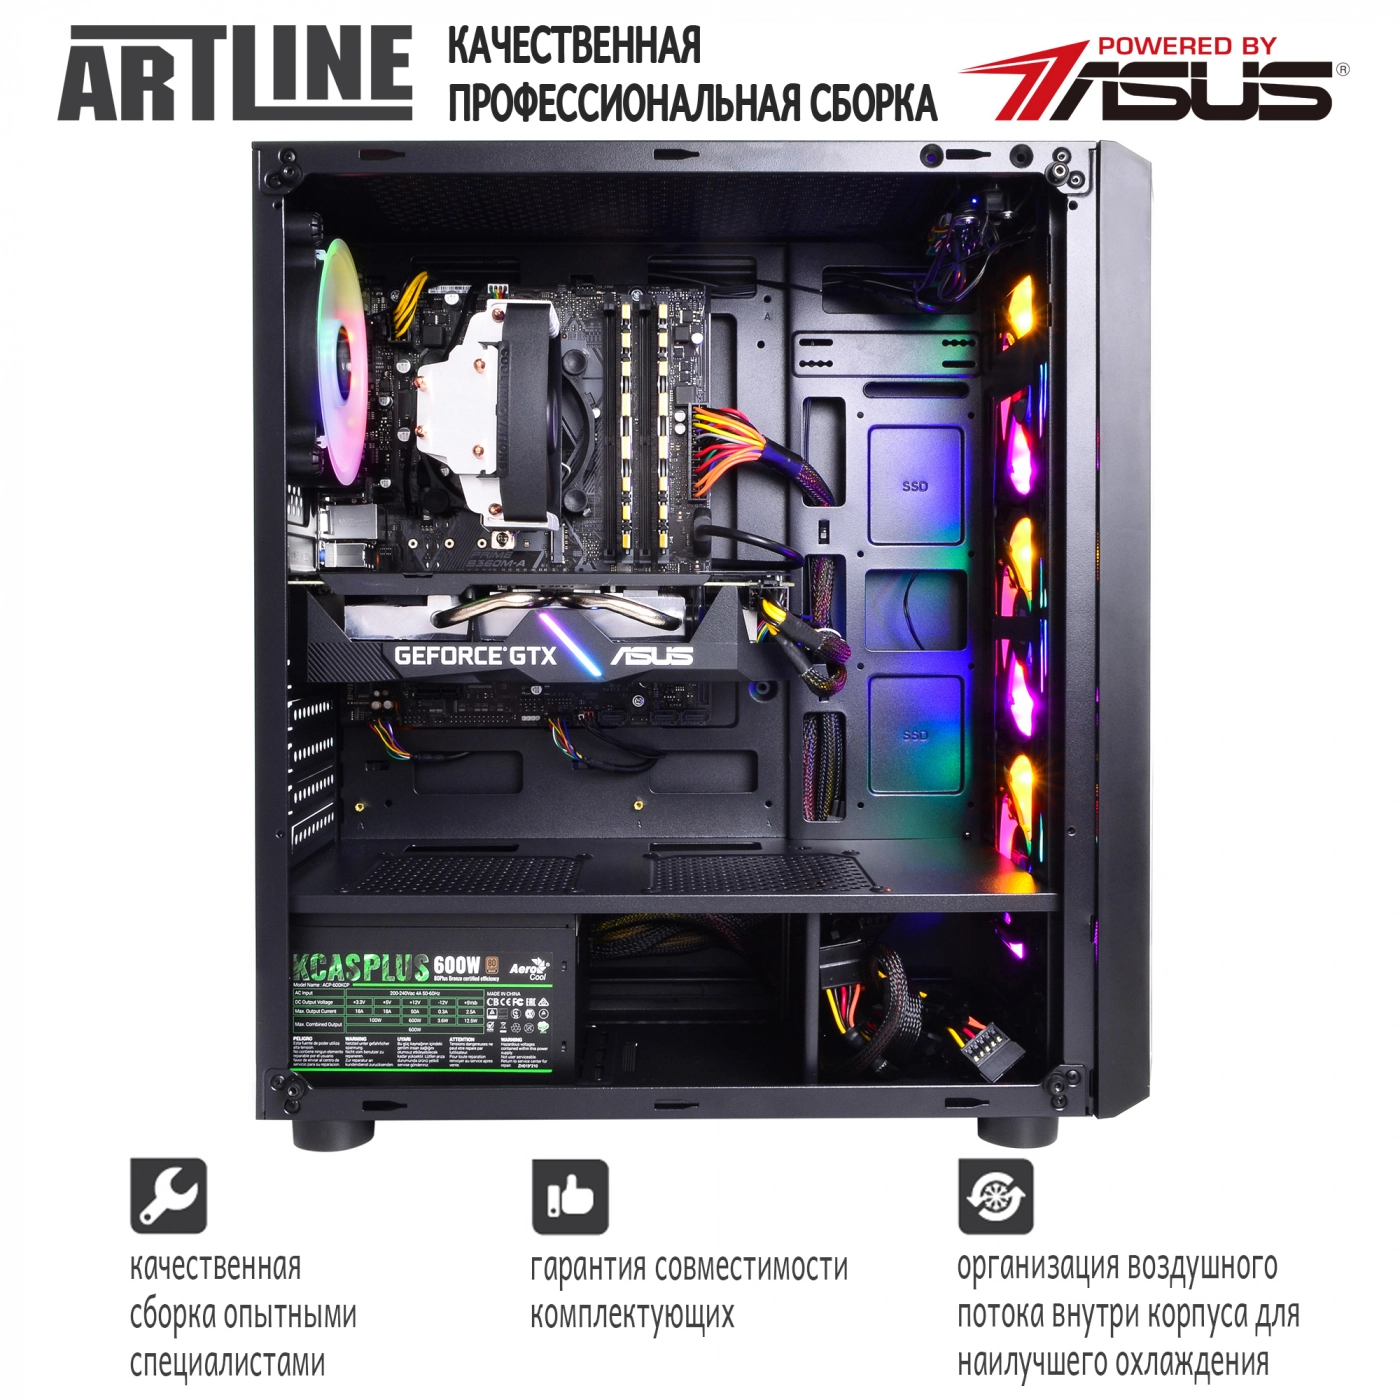 Купить Компьютер ARTLINE Gaming X55v09 - фото 9